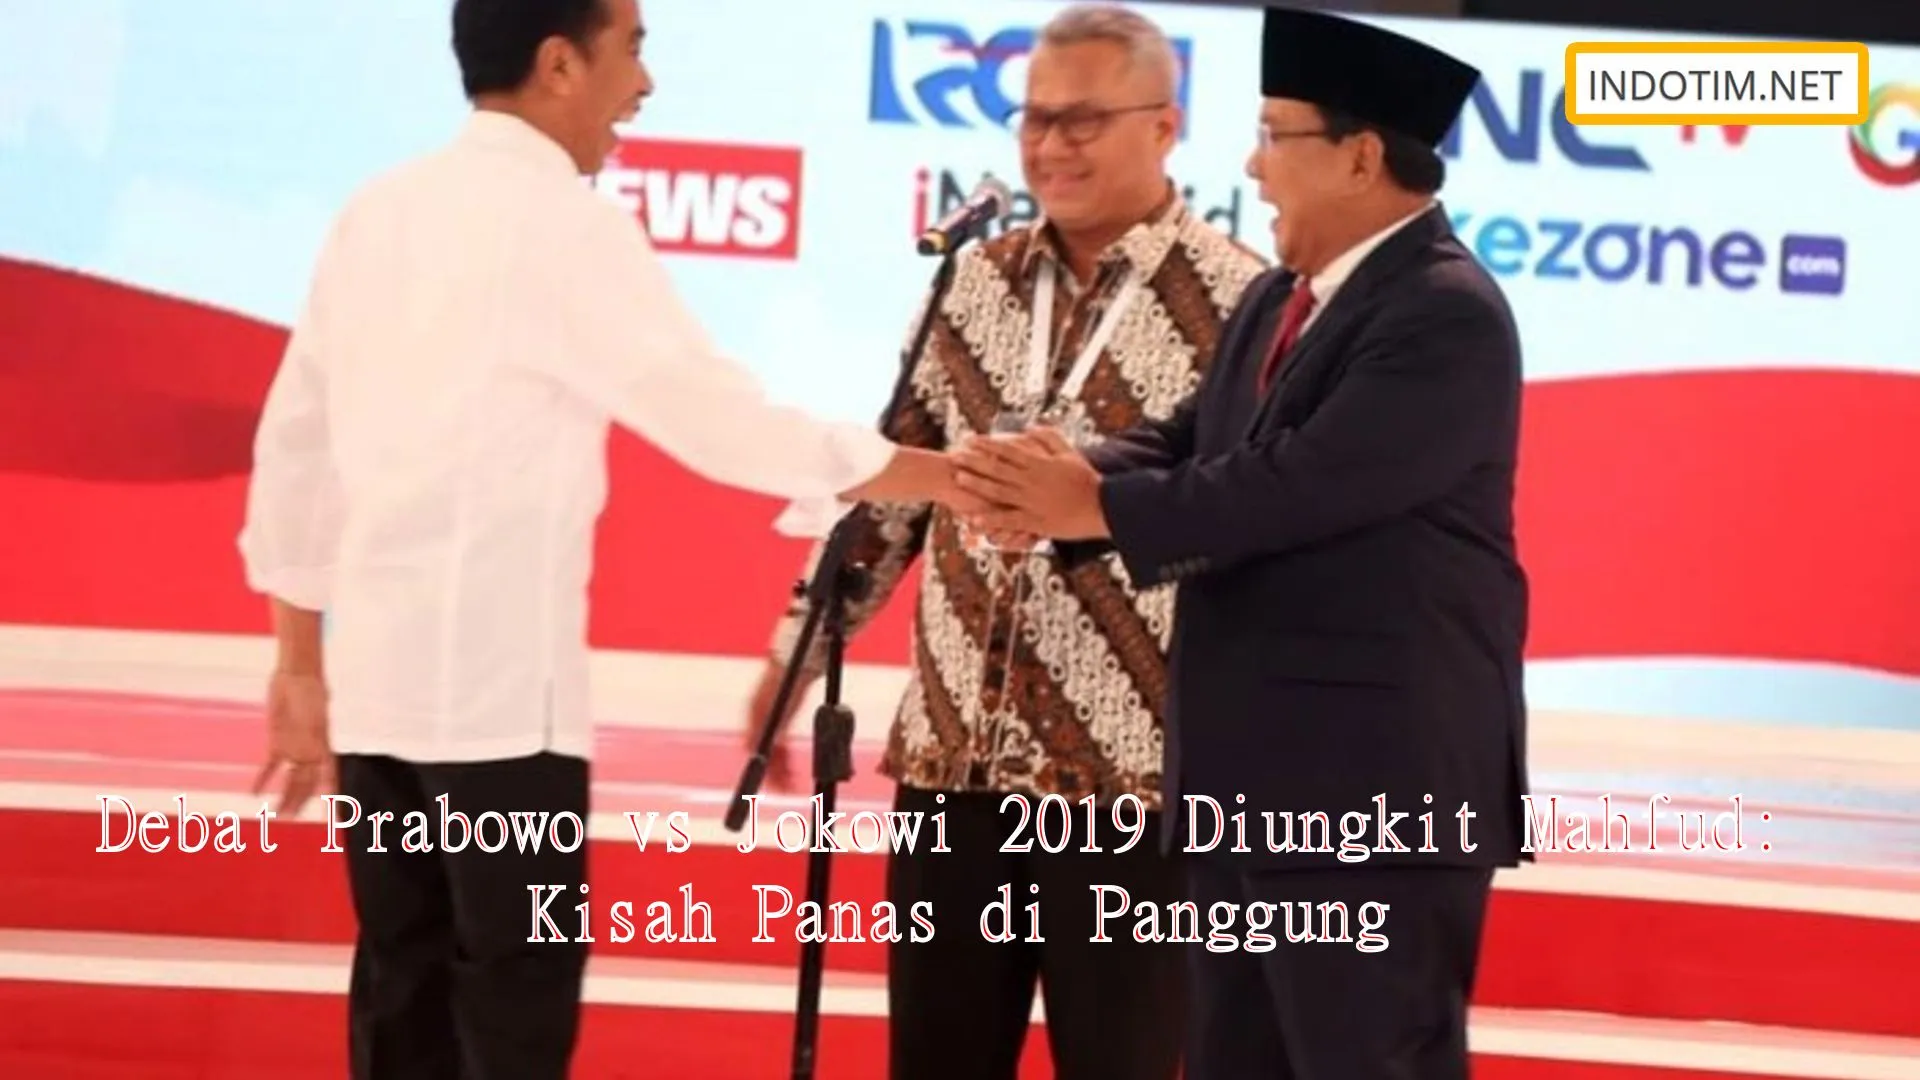 Debat Prabowo vs Jokowi 2019 Diungkit Mahfud: Kisah Panas di Panggung